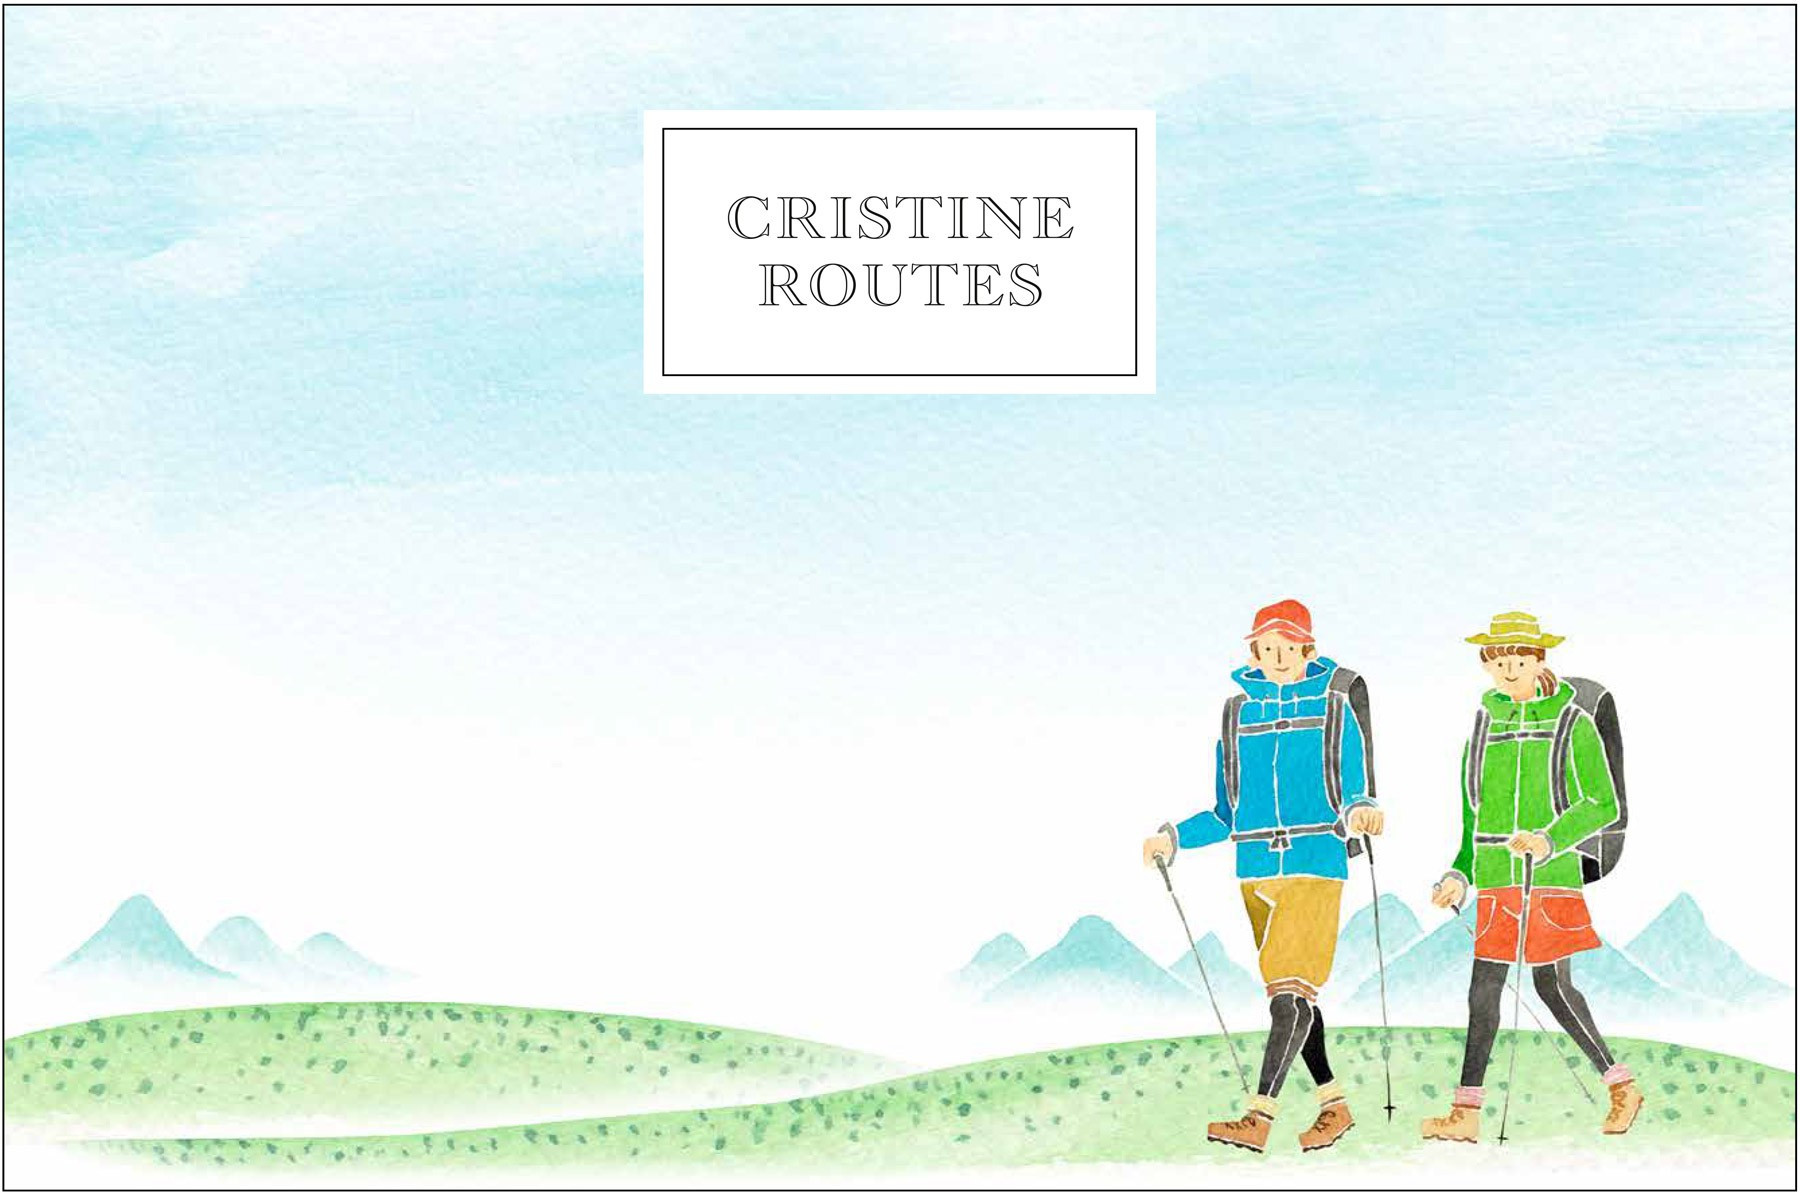 Ilustración con excursionistas en montaña y texto "Cristine Routes".